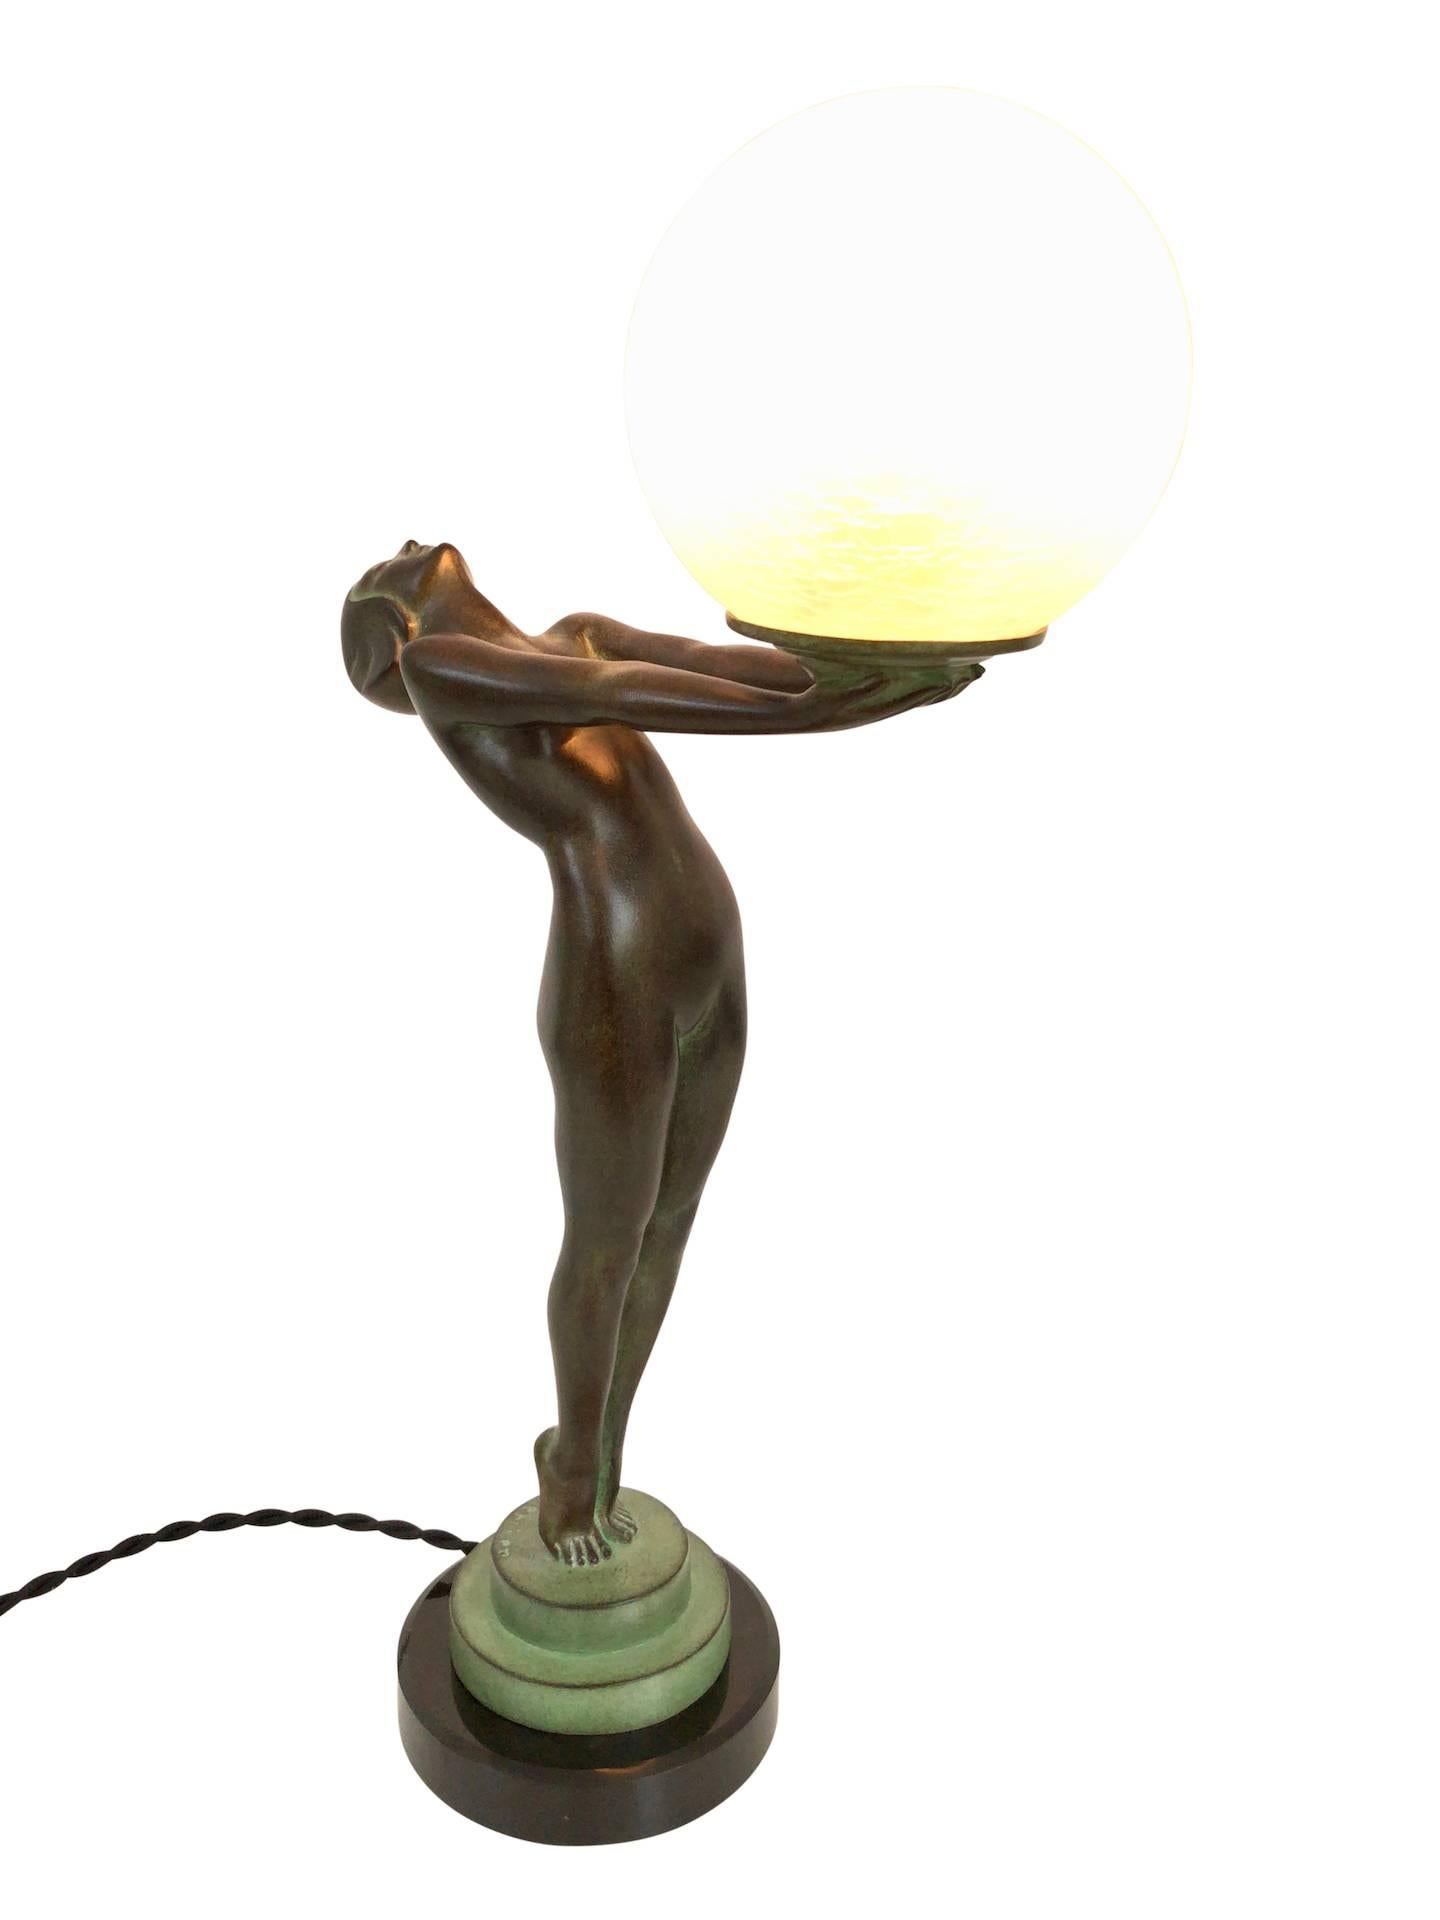 Clarté Sculpture Lueur Lamp from the Important Art Deco Artist Max Le Verrier  2